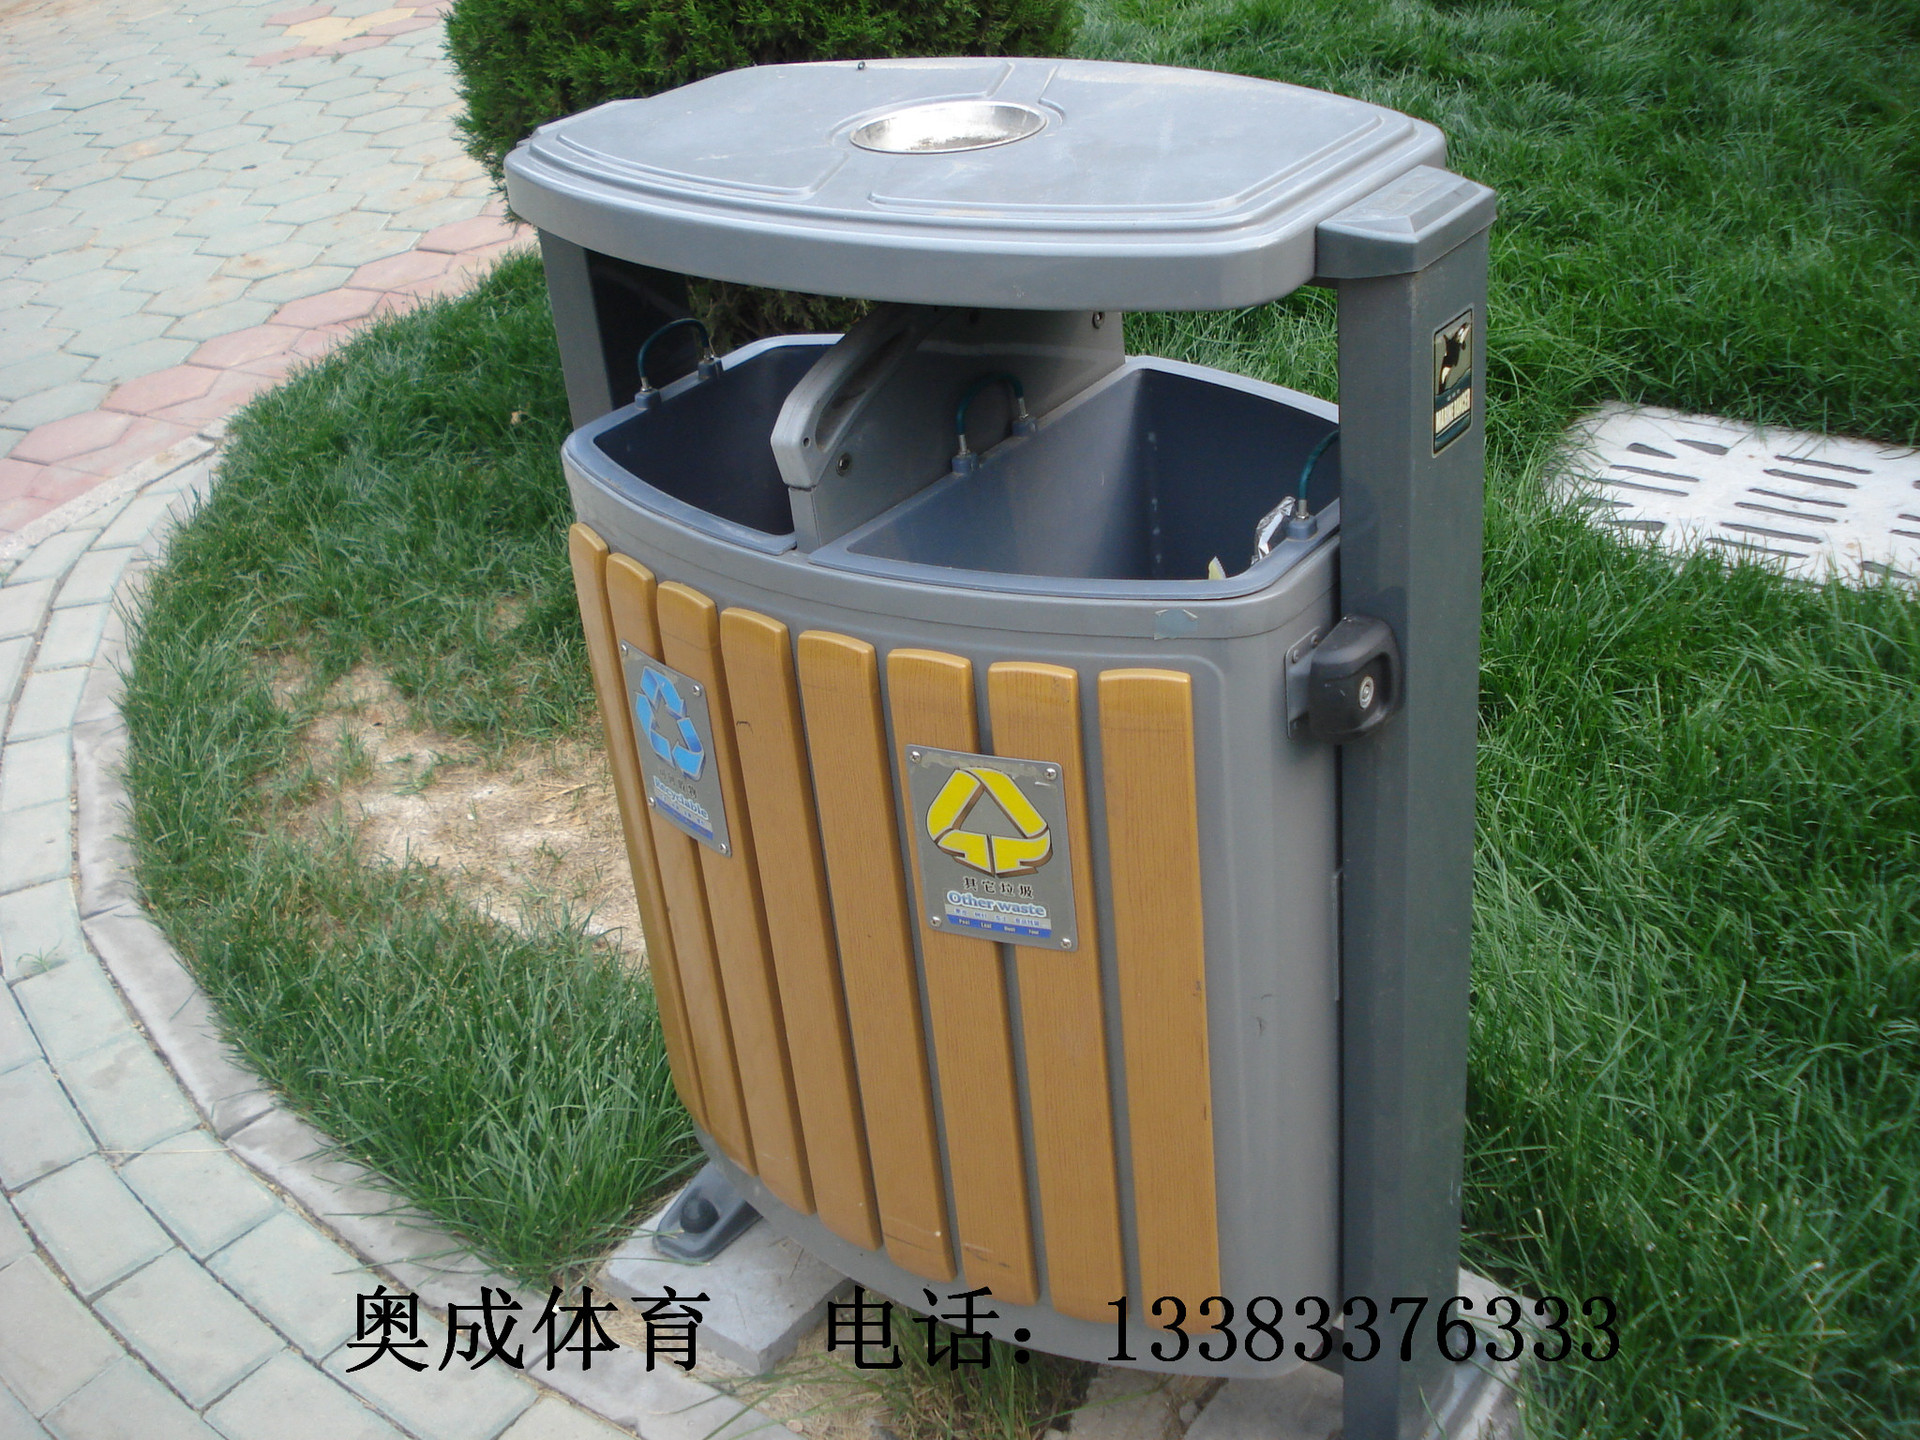 环卫垃圾桶/果皮箱/塑料垃圾桶价格/不锈钢垃圾桶厂家/分类拉圾桶示例图8